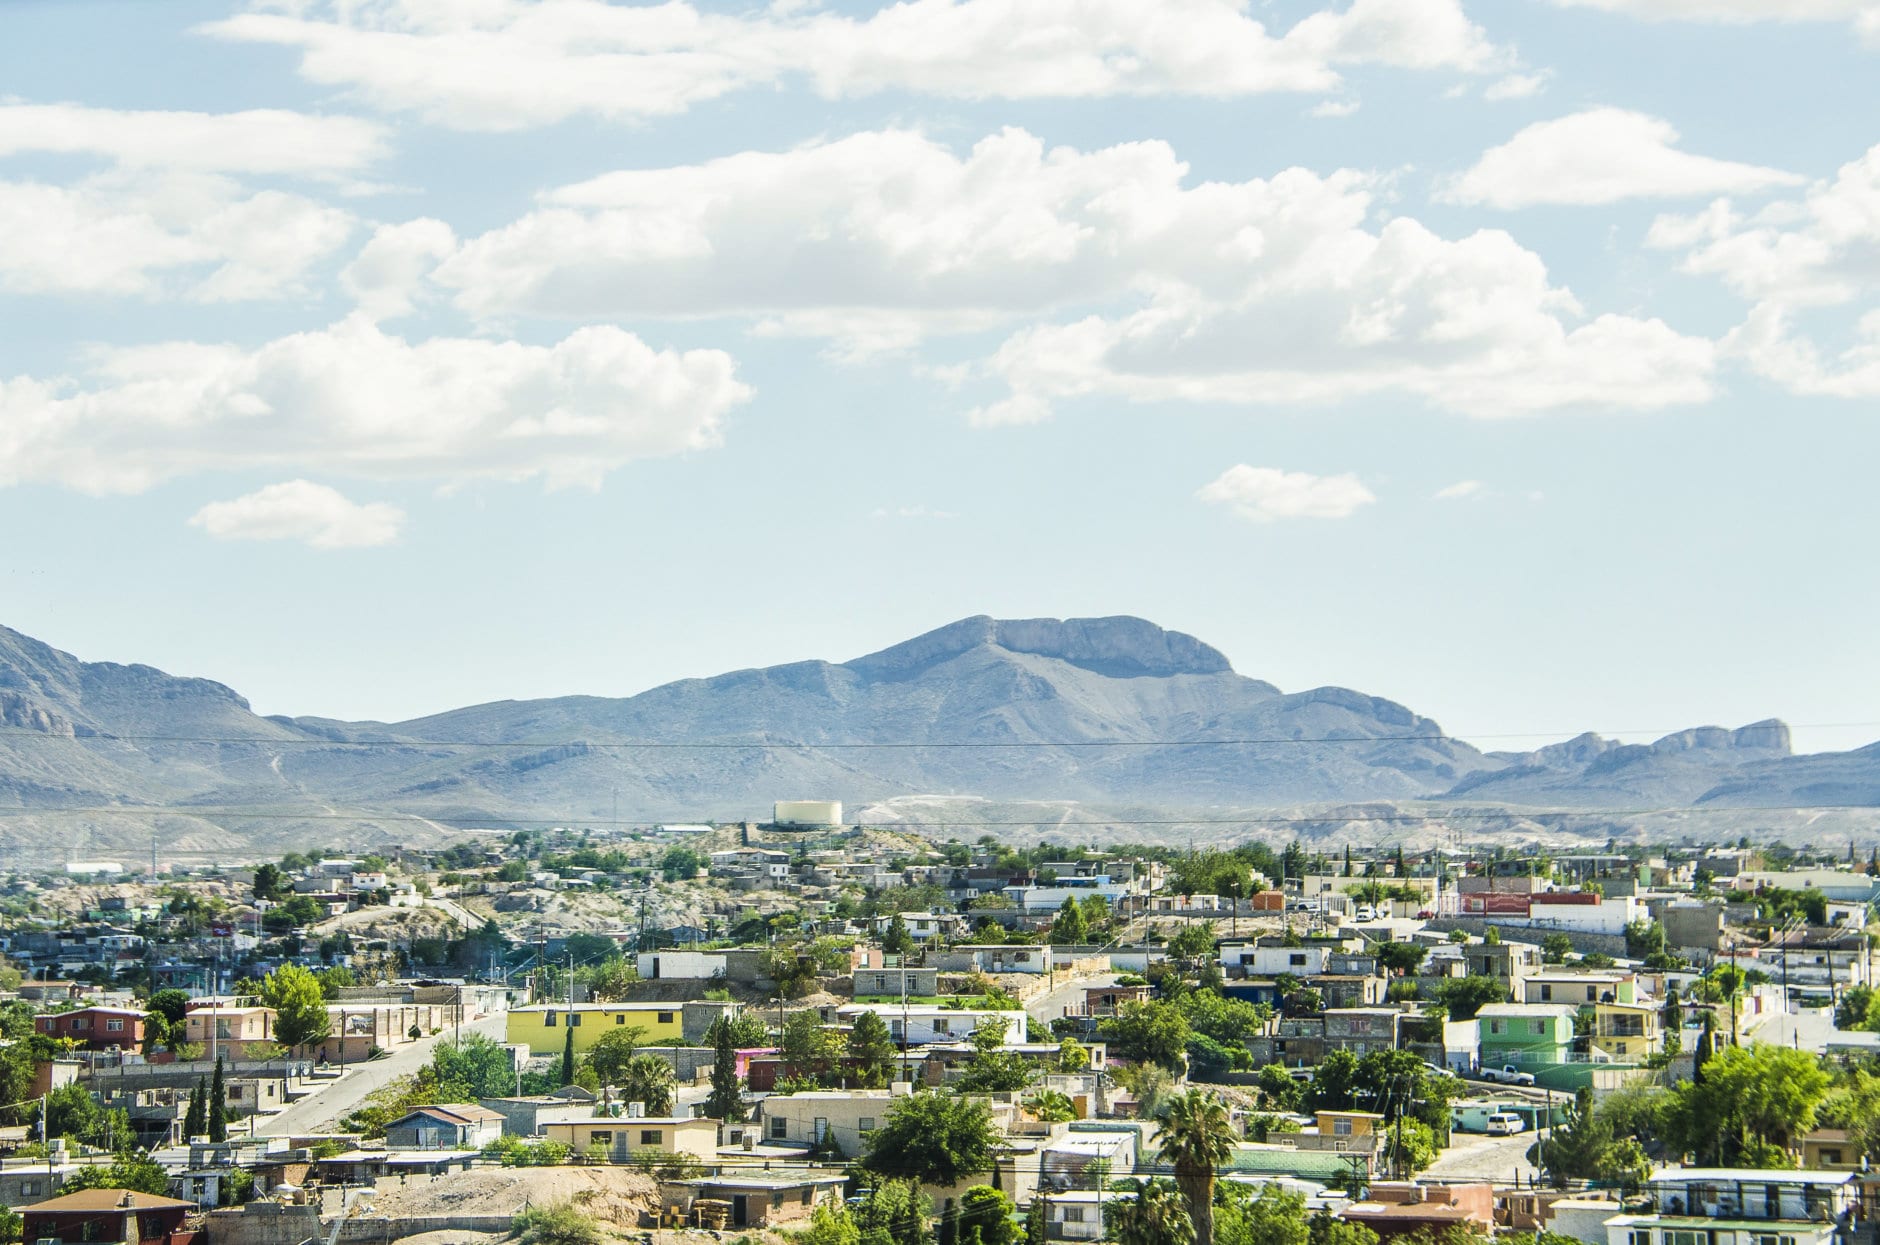 Ciudad Juárez in Mexico cityscape or skyline, viewed from border with El Paso, Texas